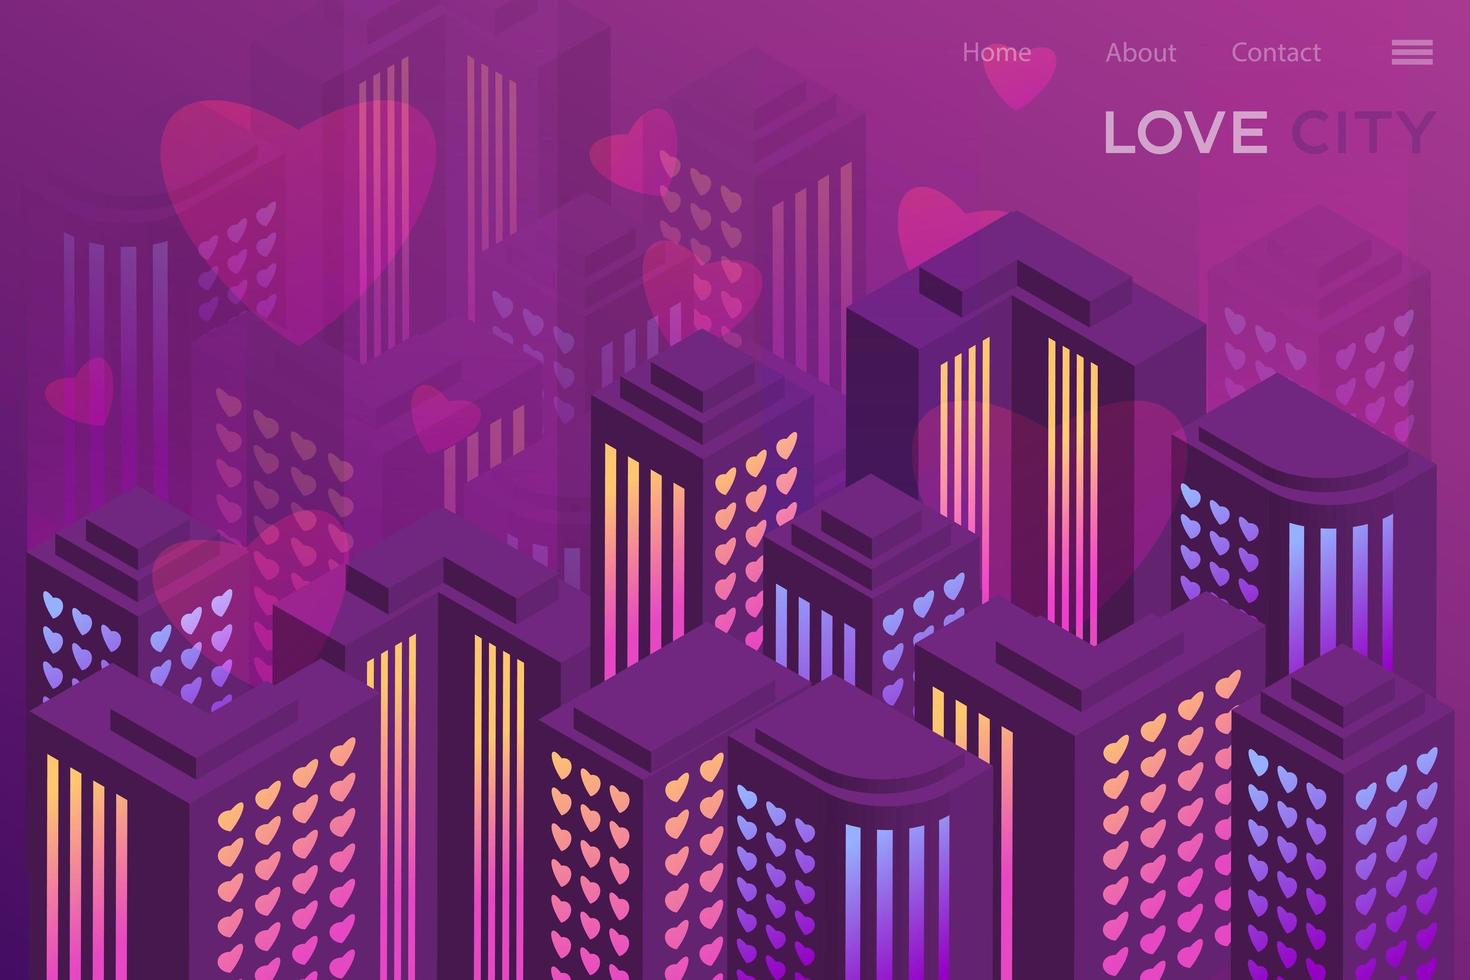 kärlekens stad, neon isometrisk illustration. design för hemsida, app. modern stil vektor